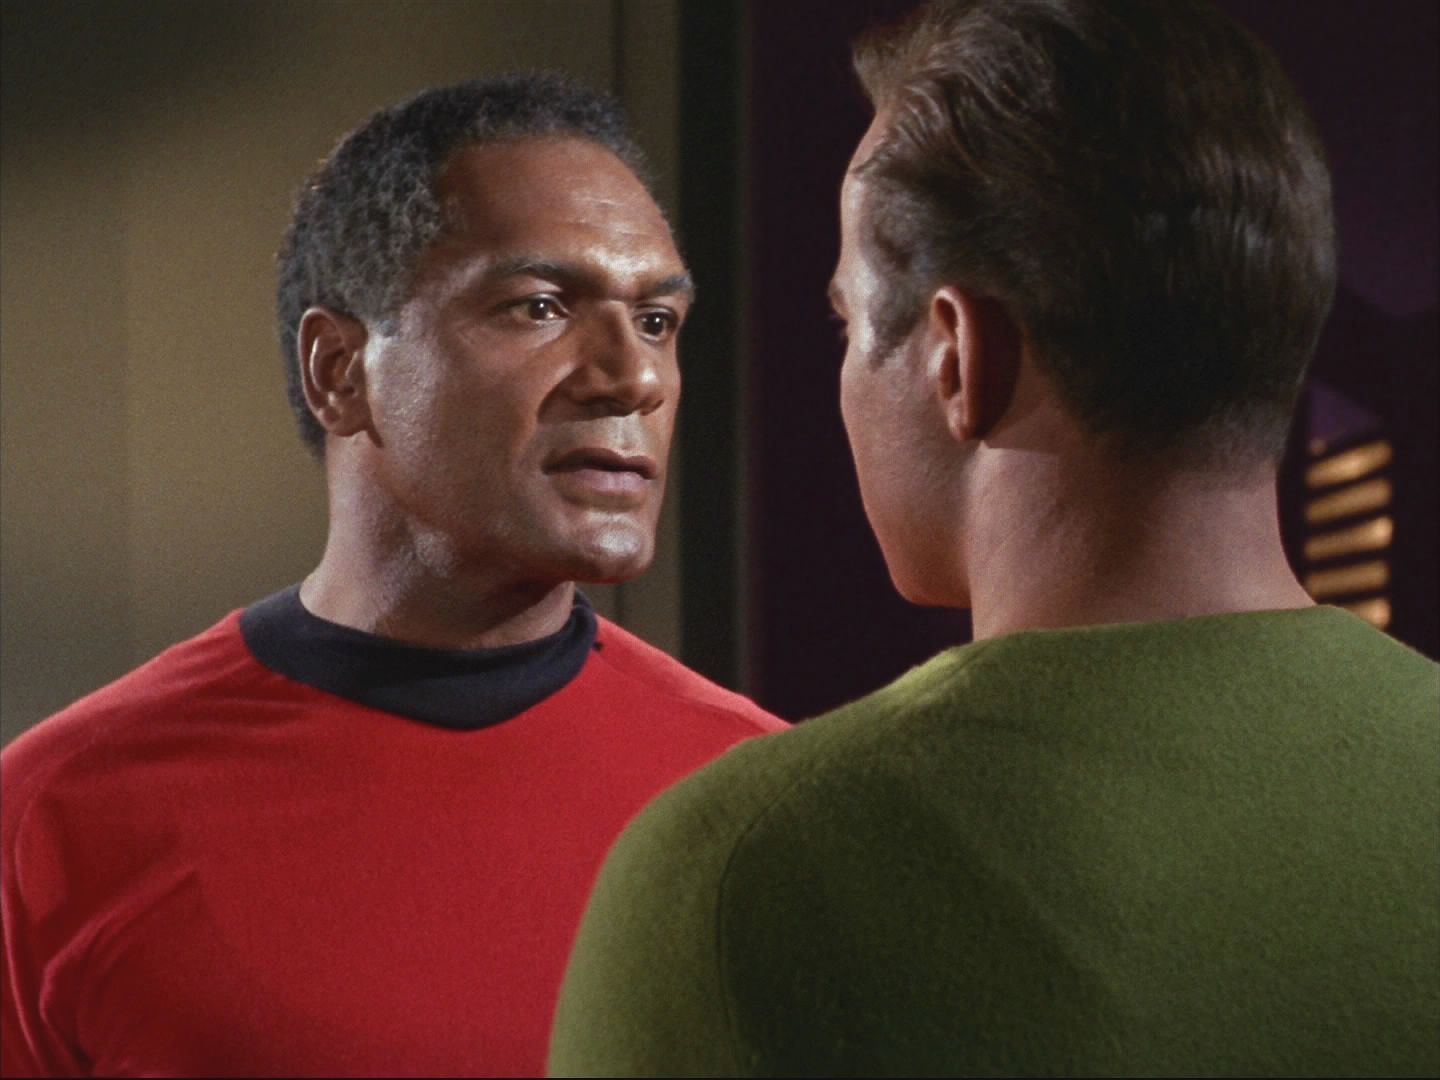 Komodor Stone je ochoten věc ututlat, pokud bude Kirk souhlasit s tím, že se vzdá služby na vesmírné lodi. Kirk odmítá a požaduje okamžité vyšetření a soud.